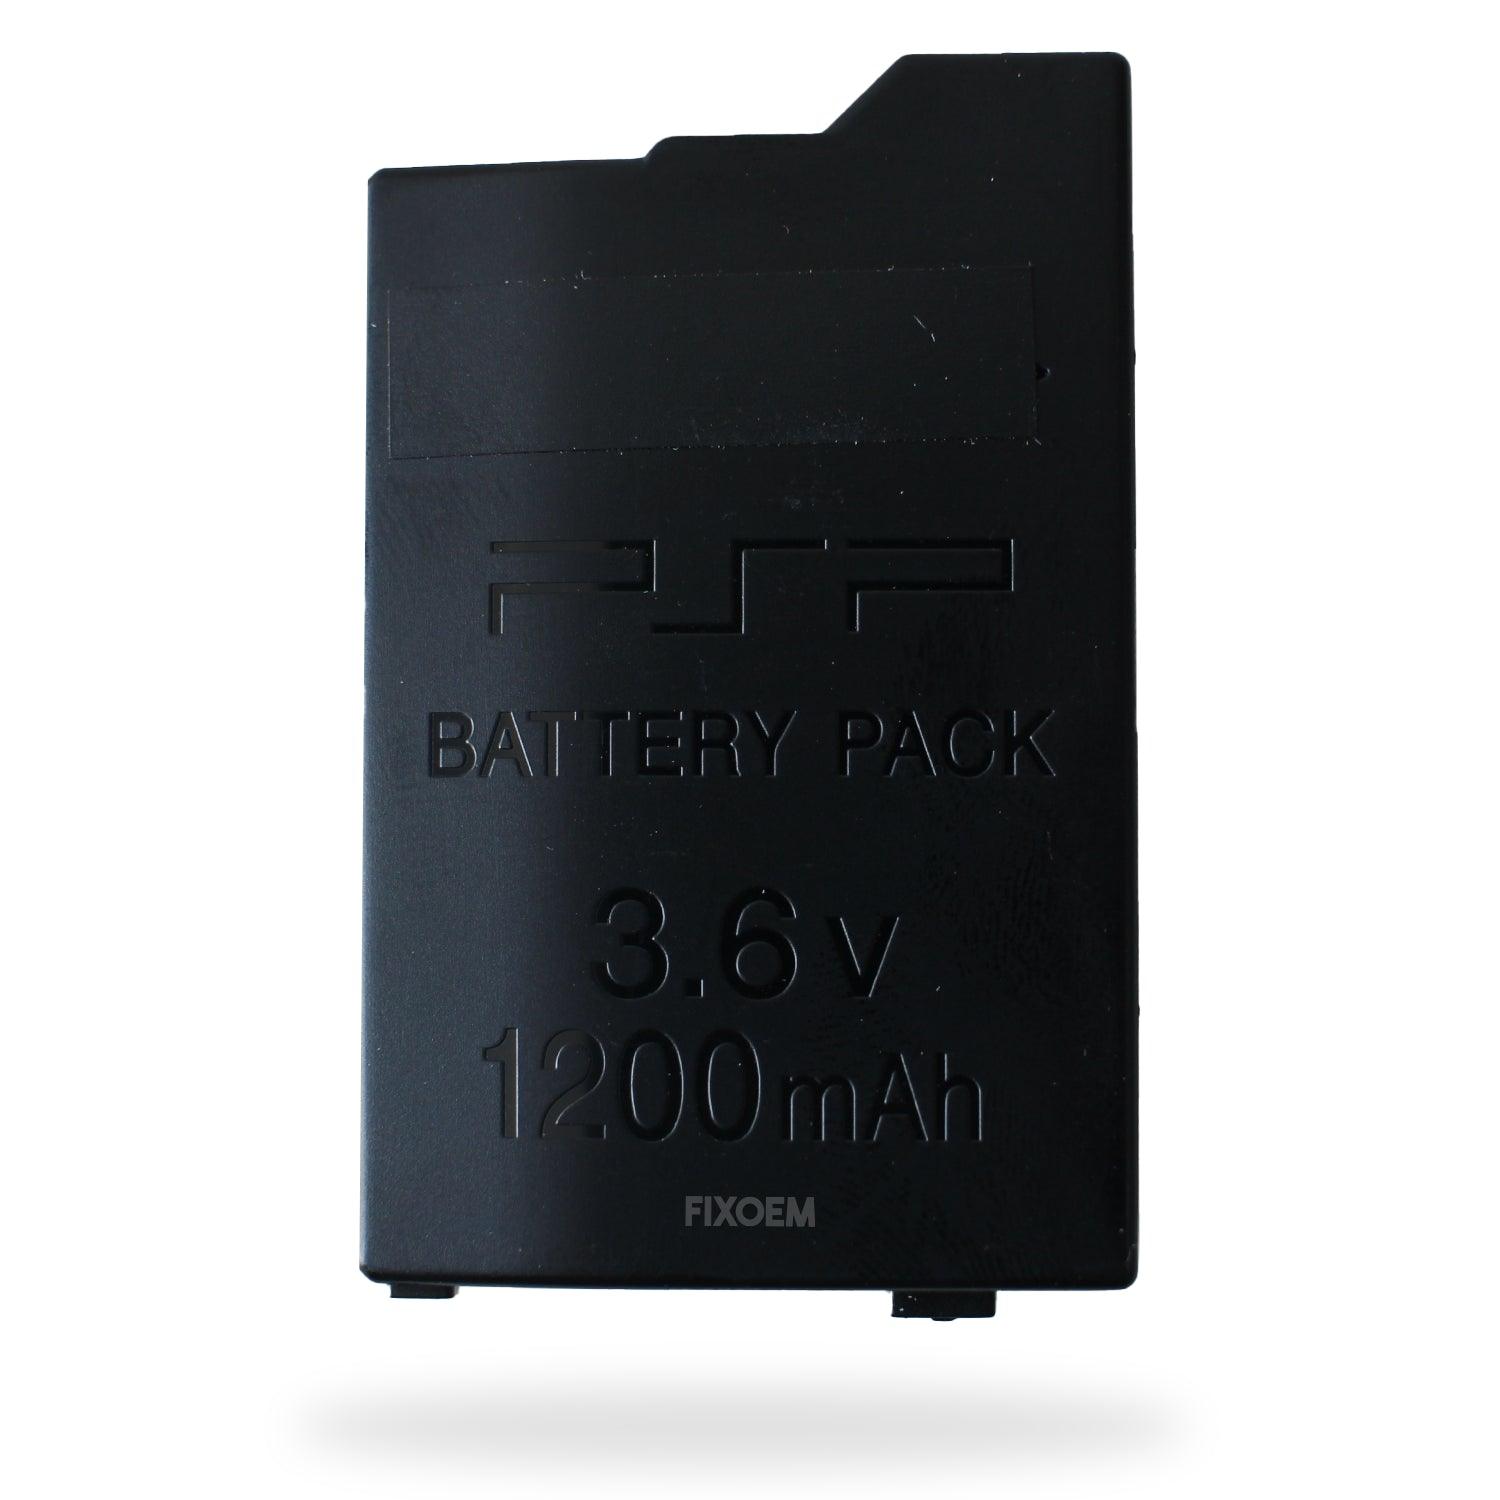 Bateria Sony Psp-s110 a solo $ 220.00 Refaccion y puestos celulares, refurbish y microelectronica.- FixOEM